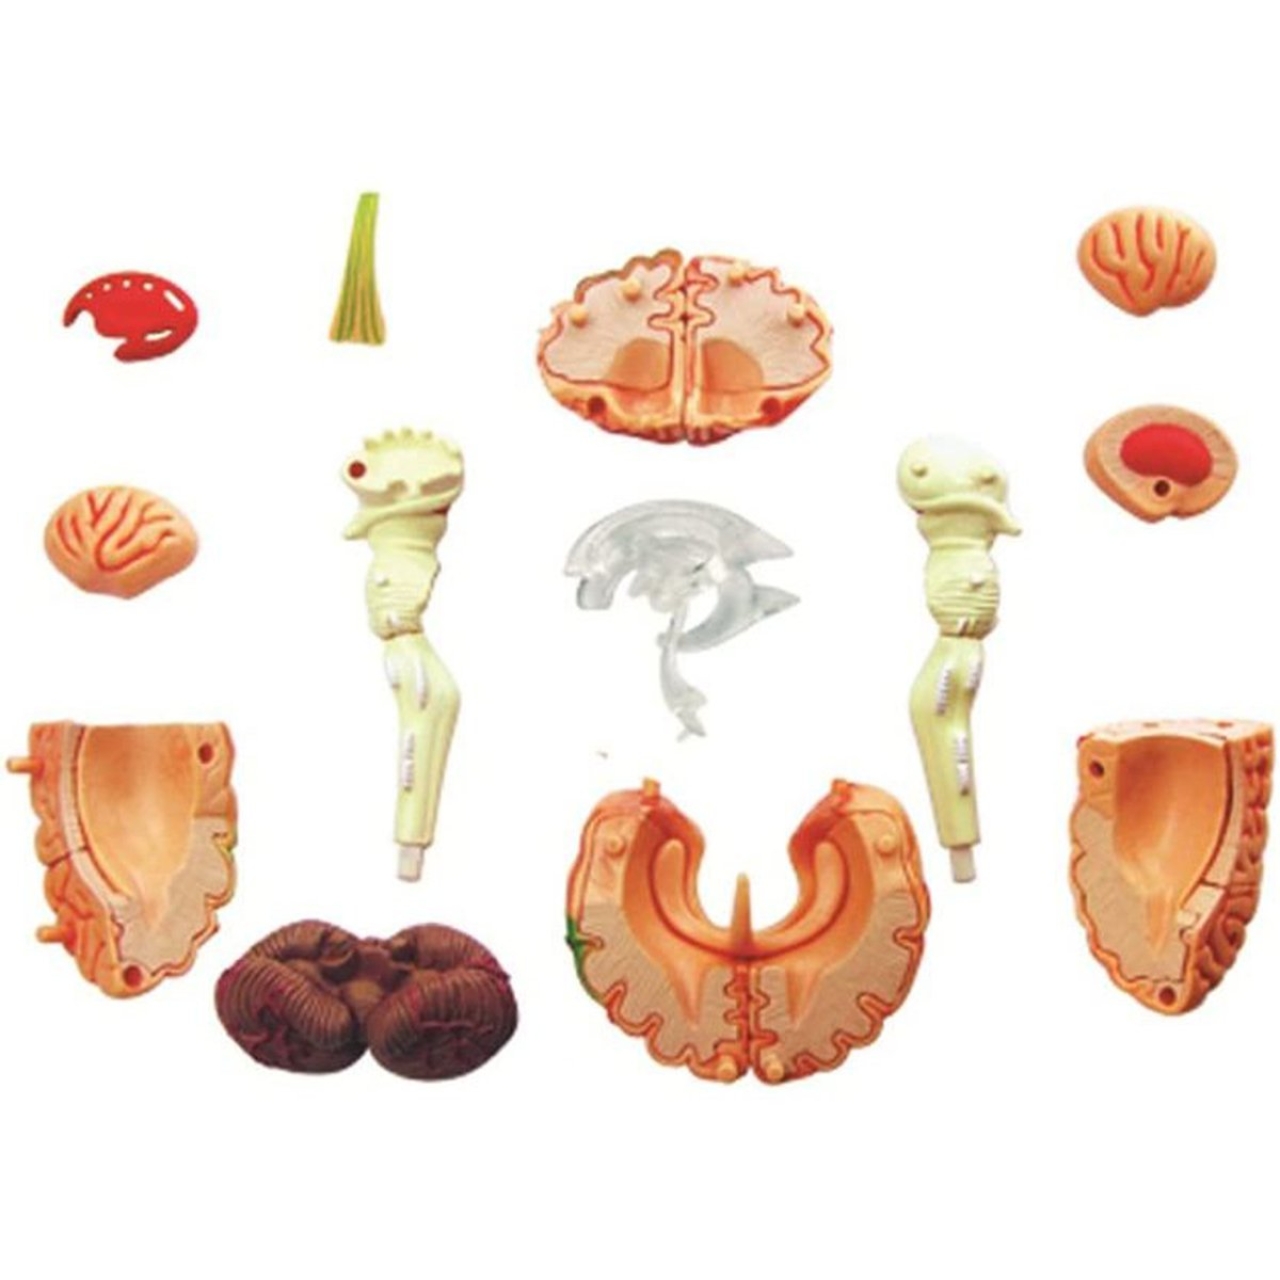 بازی آموزشی مدل آناتومی مغز انسان کد 626008